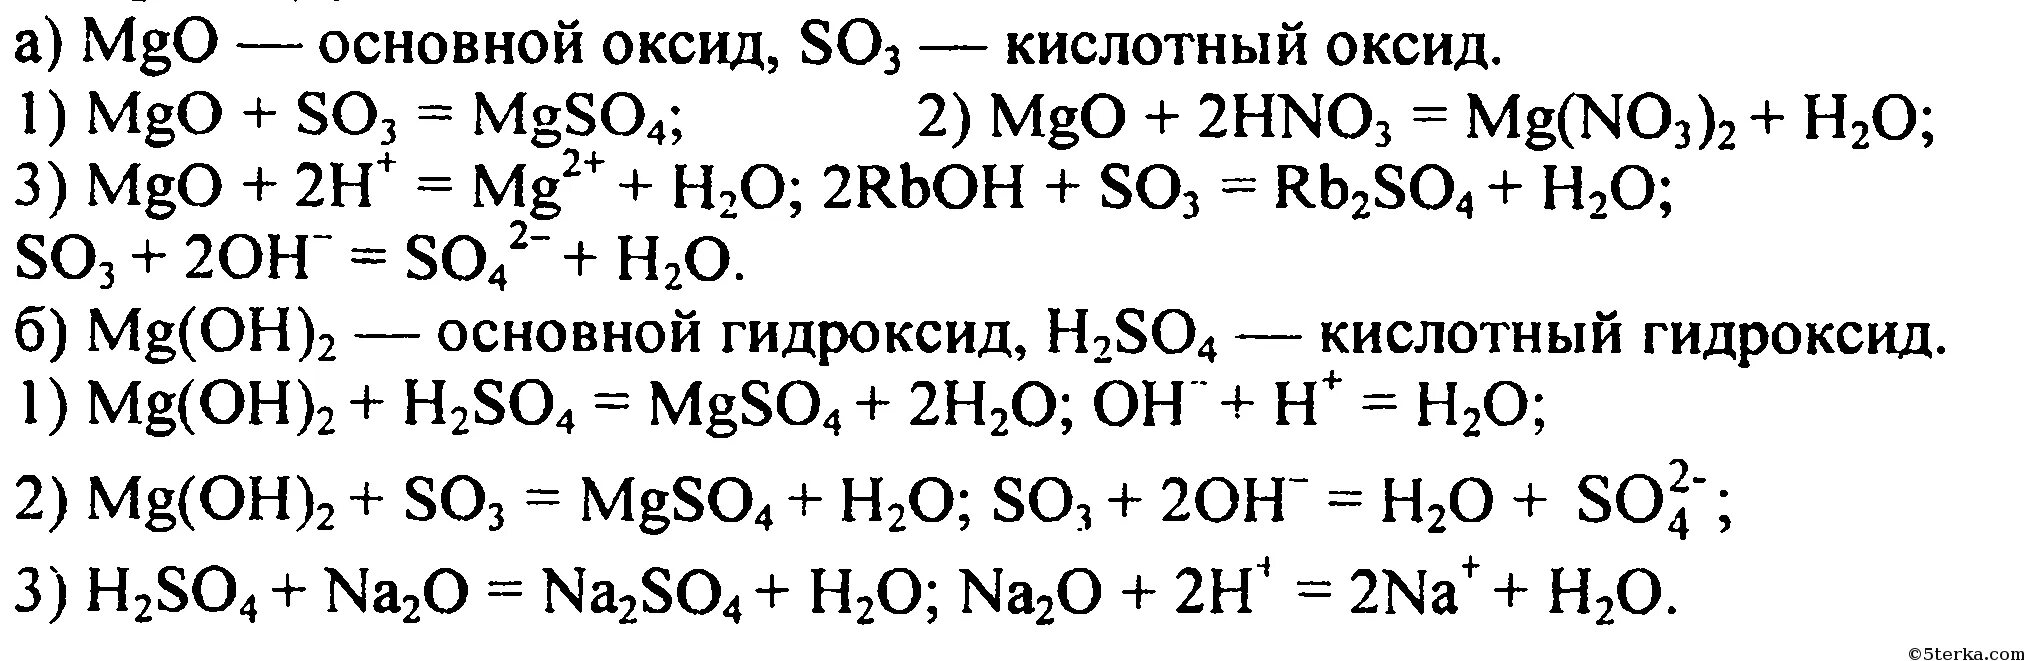 Mgo zno реакция. Уравнение химической реакции MGO И so3. Химические уравнения магний хлор 2. Цепочка реакций с магнием. MGO+h2so4 уравнение реакции.